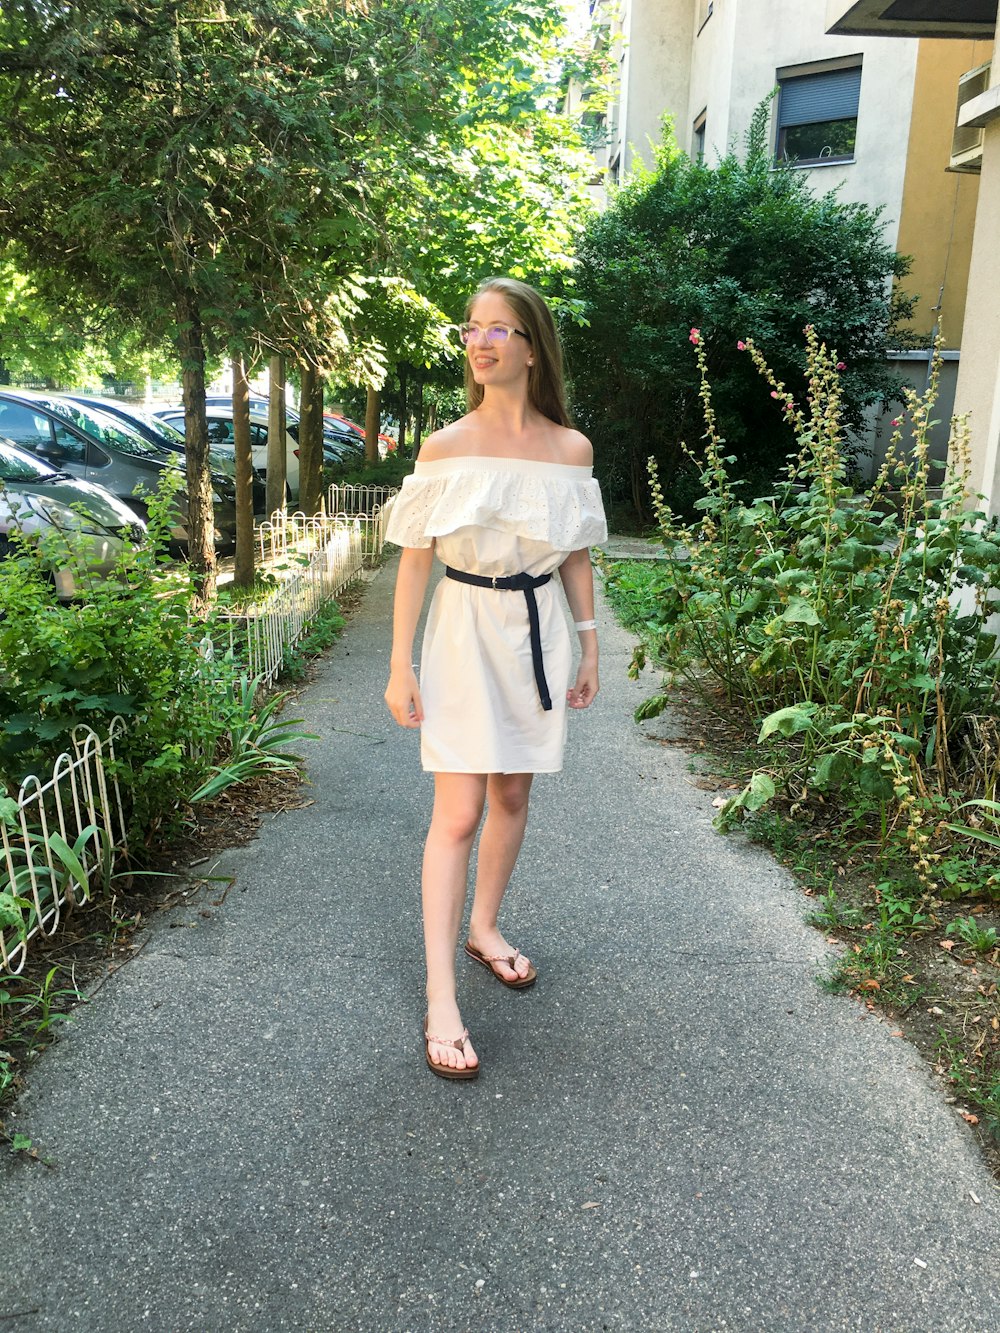 歩道に立つ白いドレスの女性